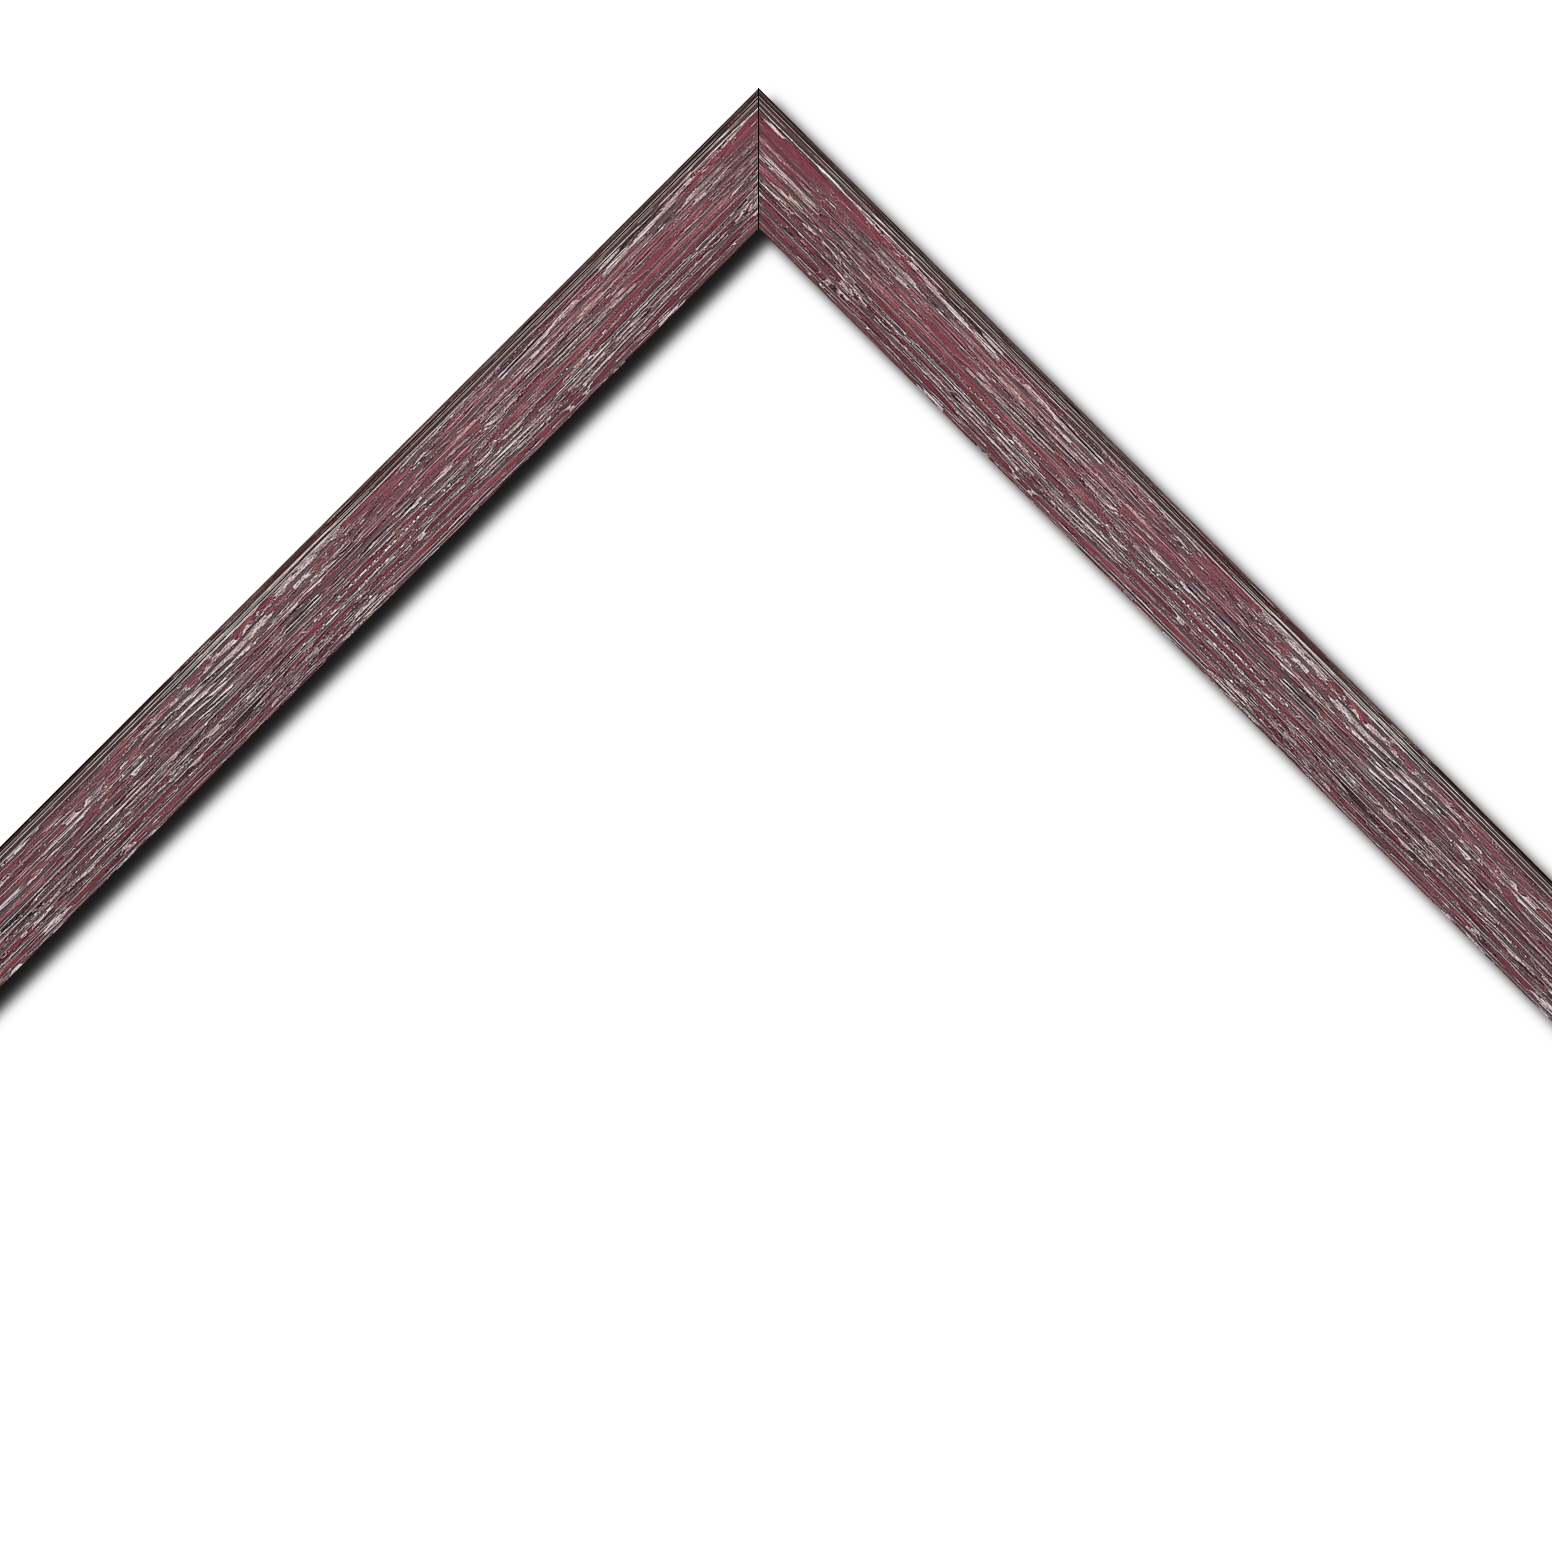 Baguette bois profil arrondi en pente plongeant largeur 2.4cm couleur framboise finition veinée, reflet argenté